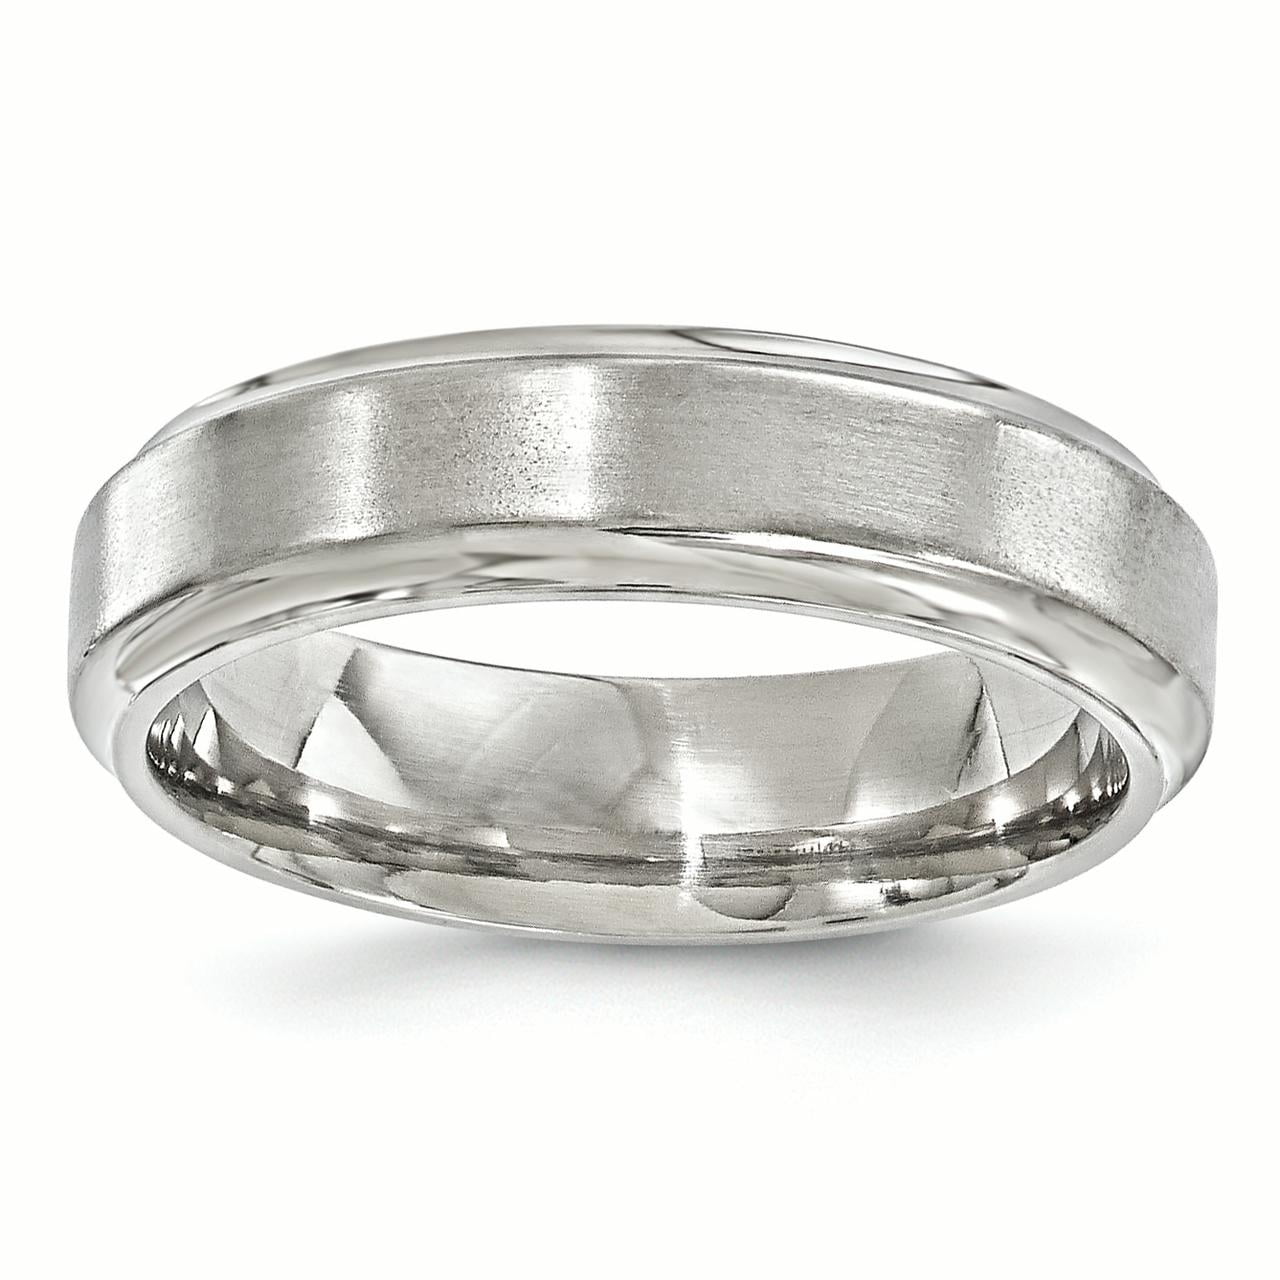 Wedding Band - Edward Mirell Titanium Beveled 6MM Wedding Band Ring